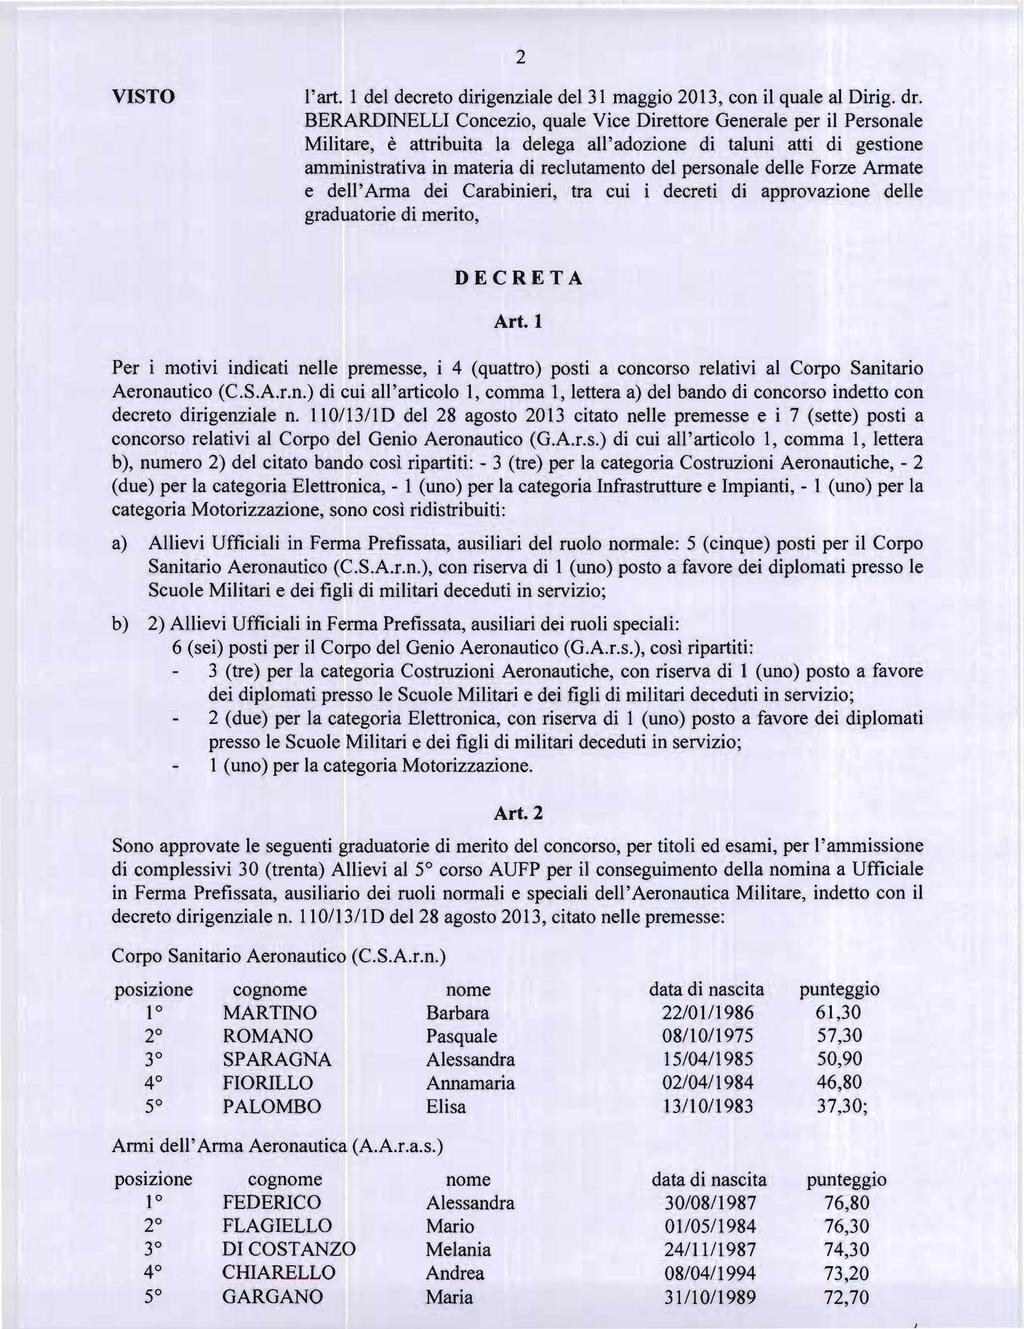 2 l'art. 1 del decreto dirigenziale del 31 maggio 2013, con il quale al Dirig. dr.